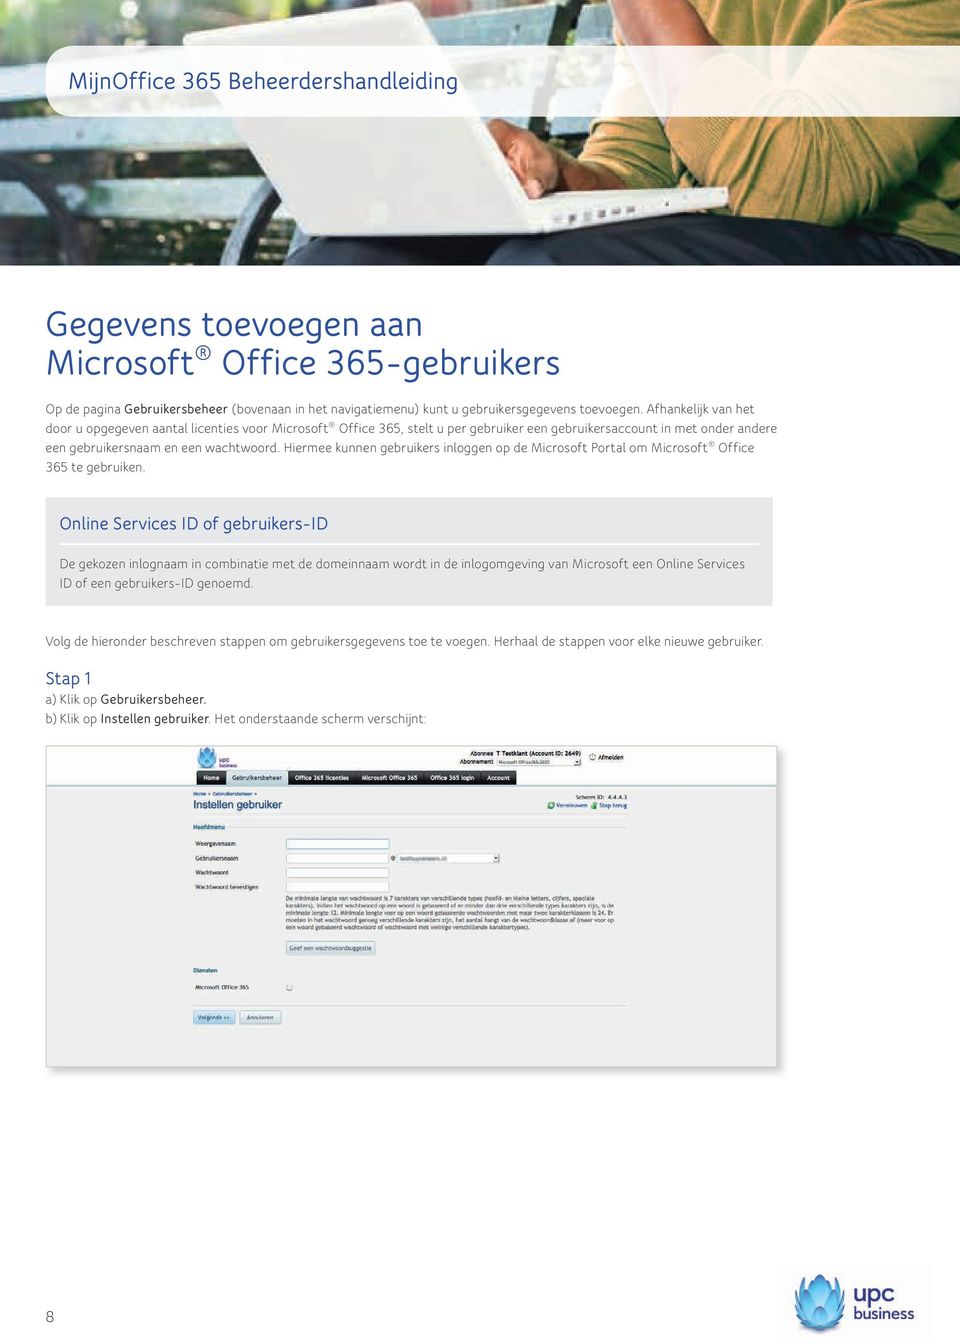 Hiermee kunnen gebruikers inloggen op de Microsoft Portal om Microsoft Office 365 te gebruiken.